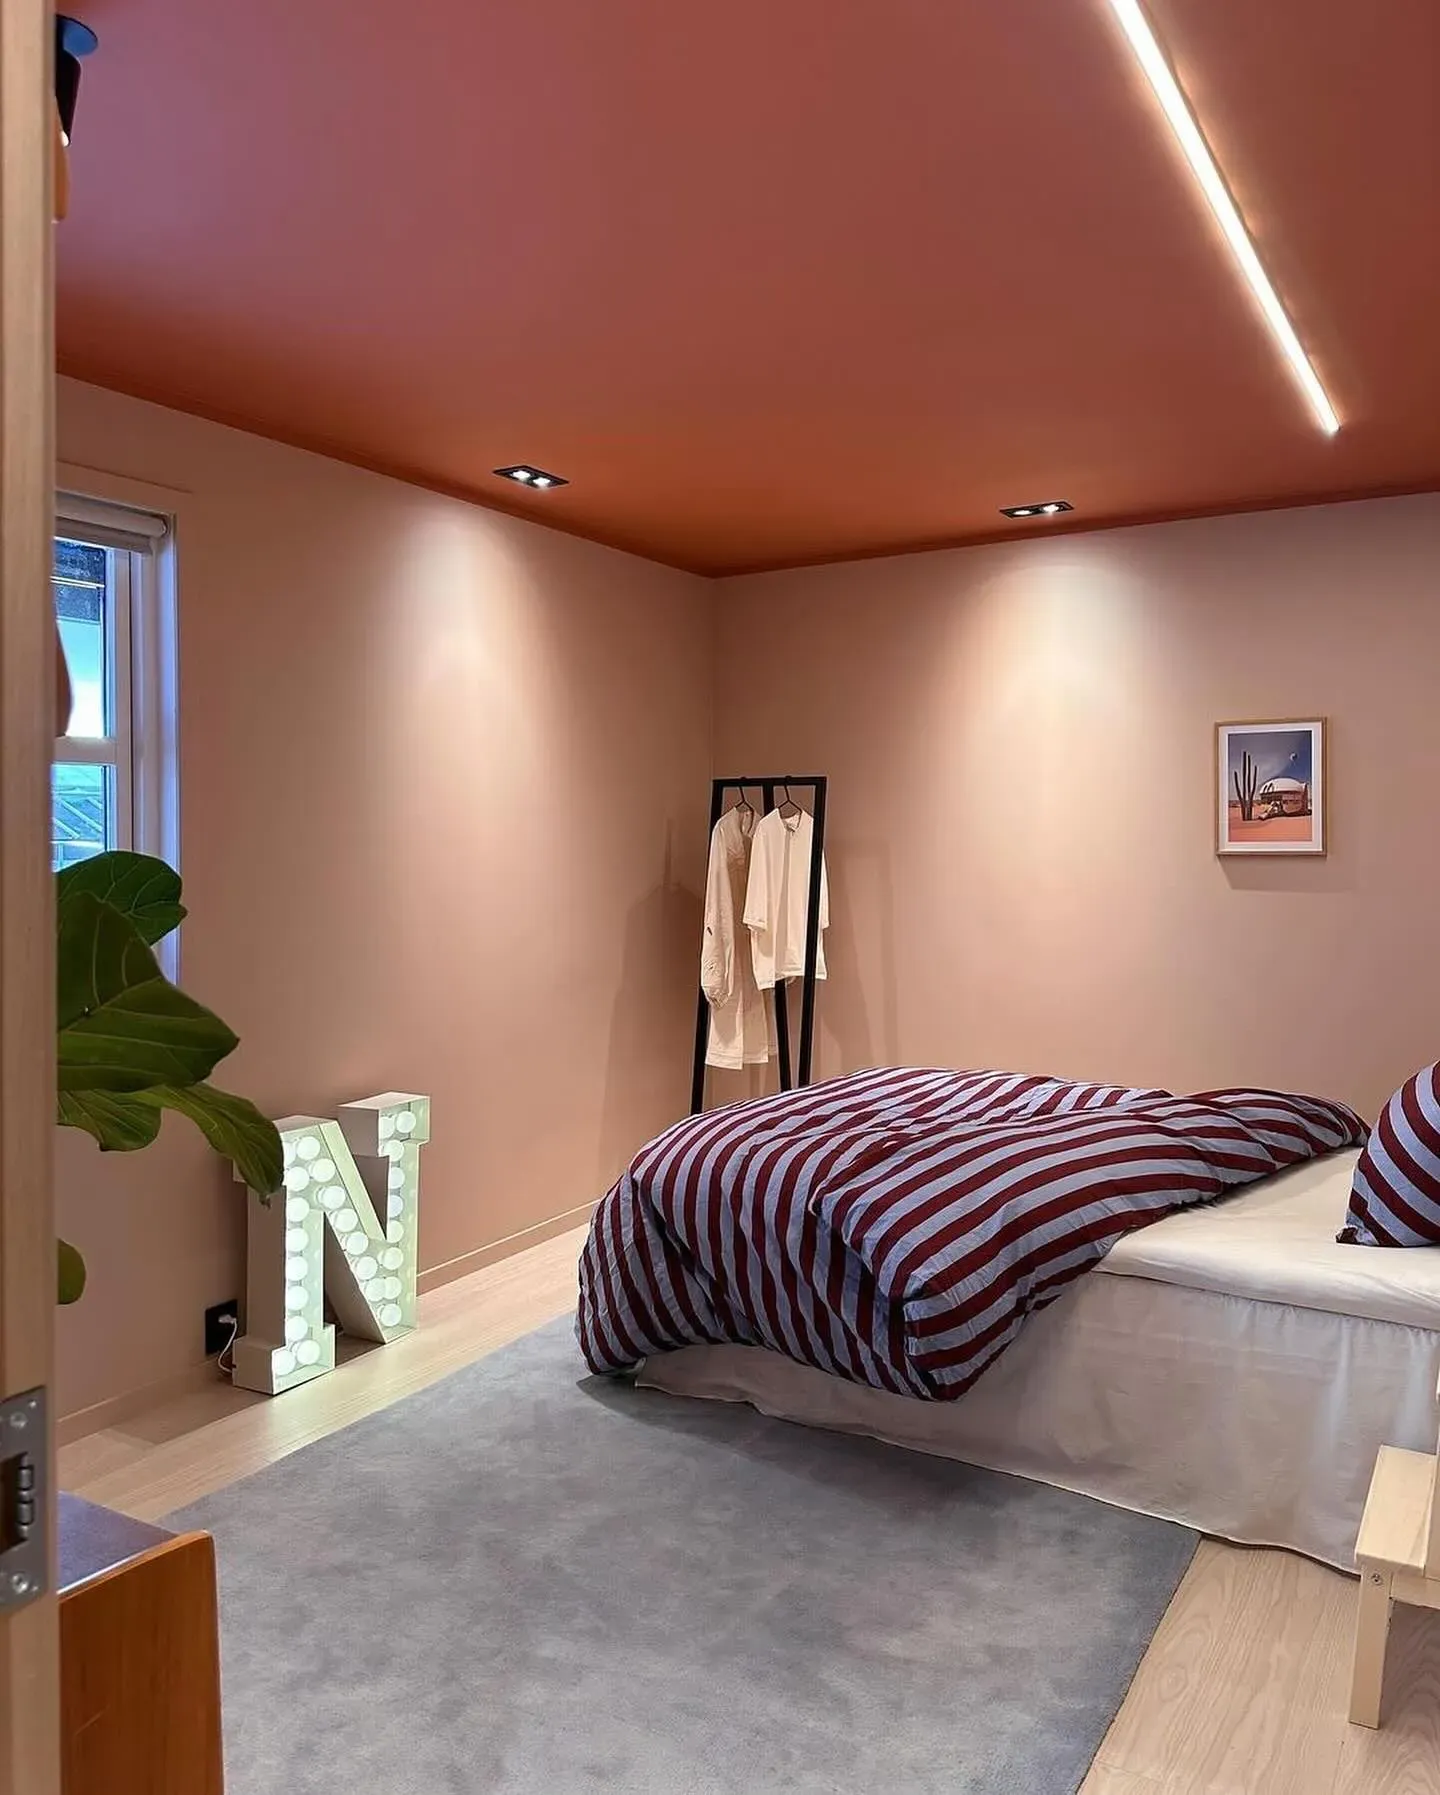 Jotun Indi Pink modern bedroom interior